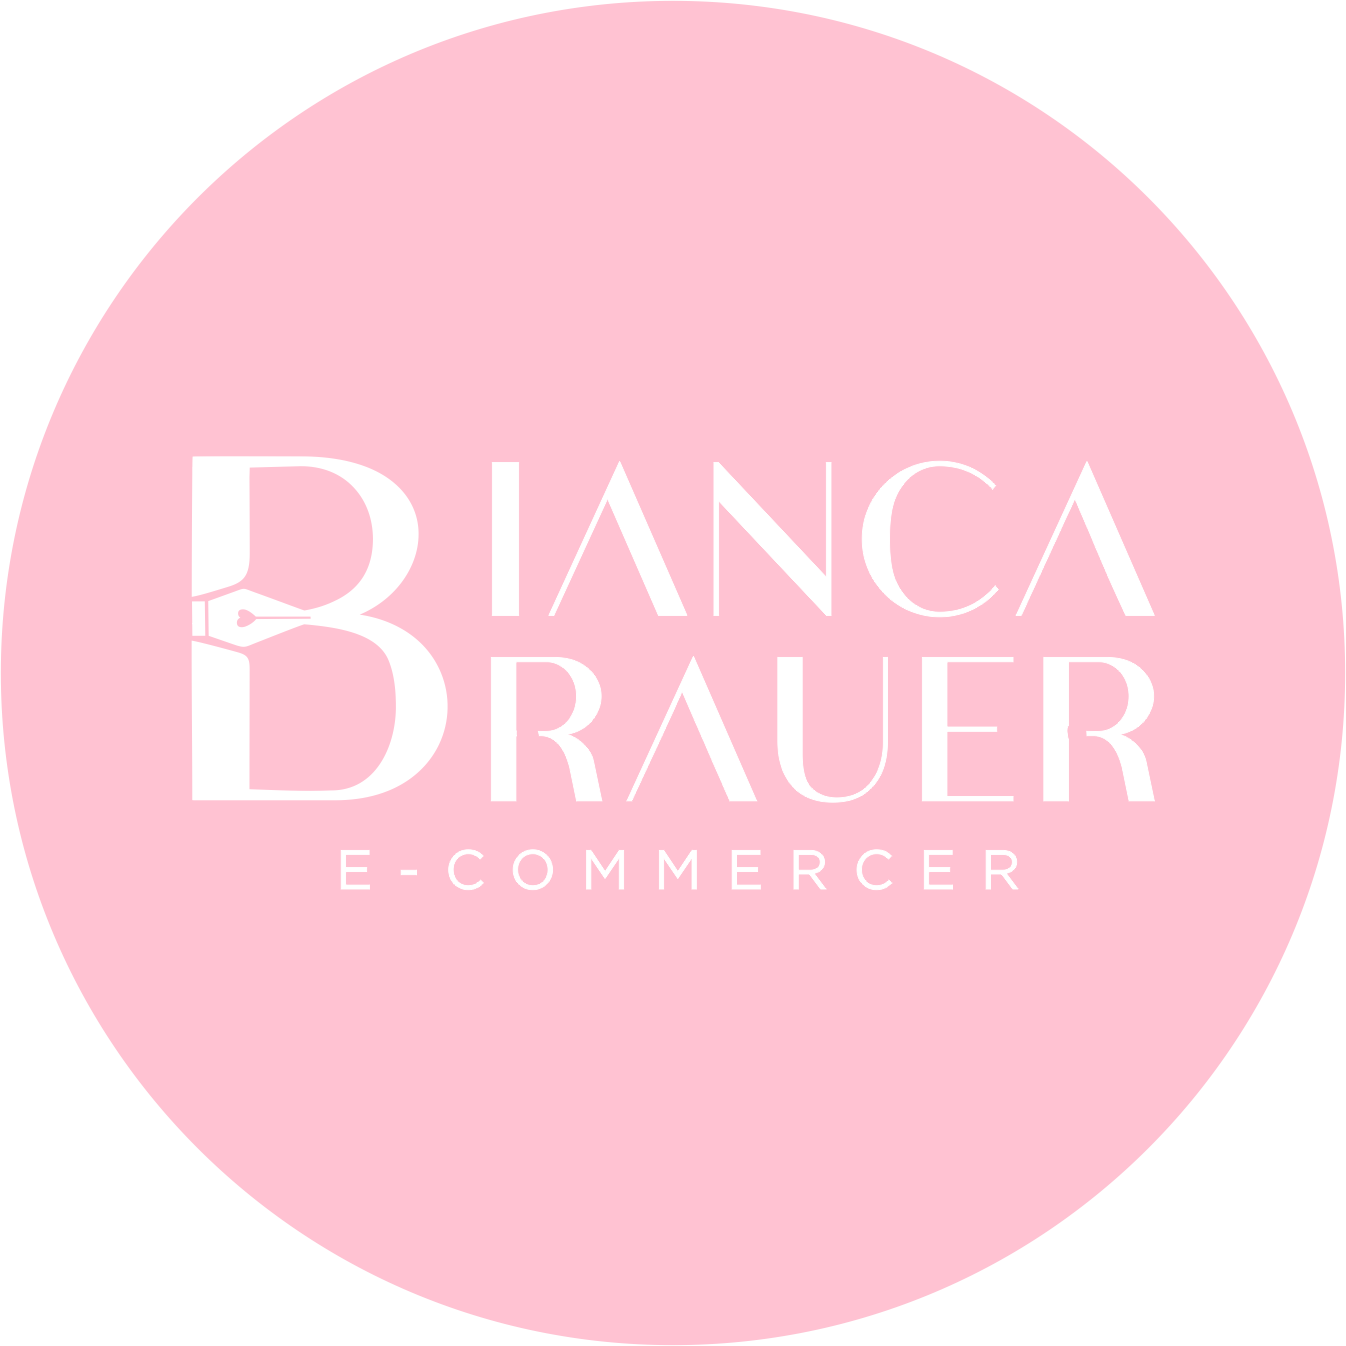 Brauer E-commerce